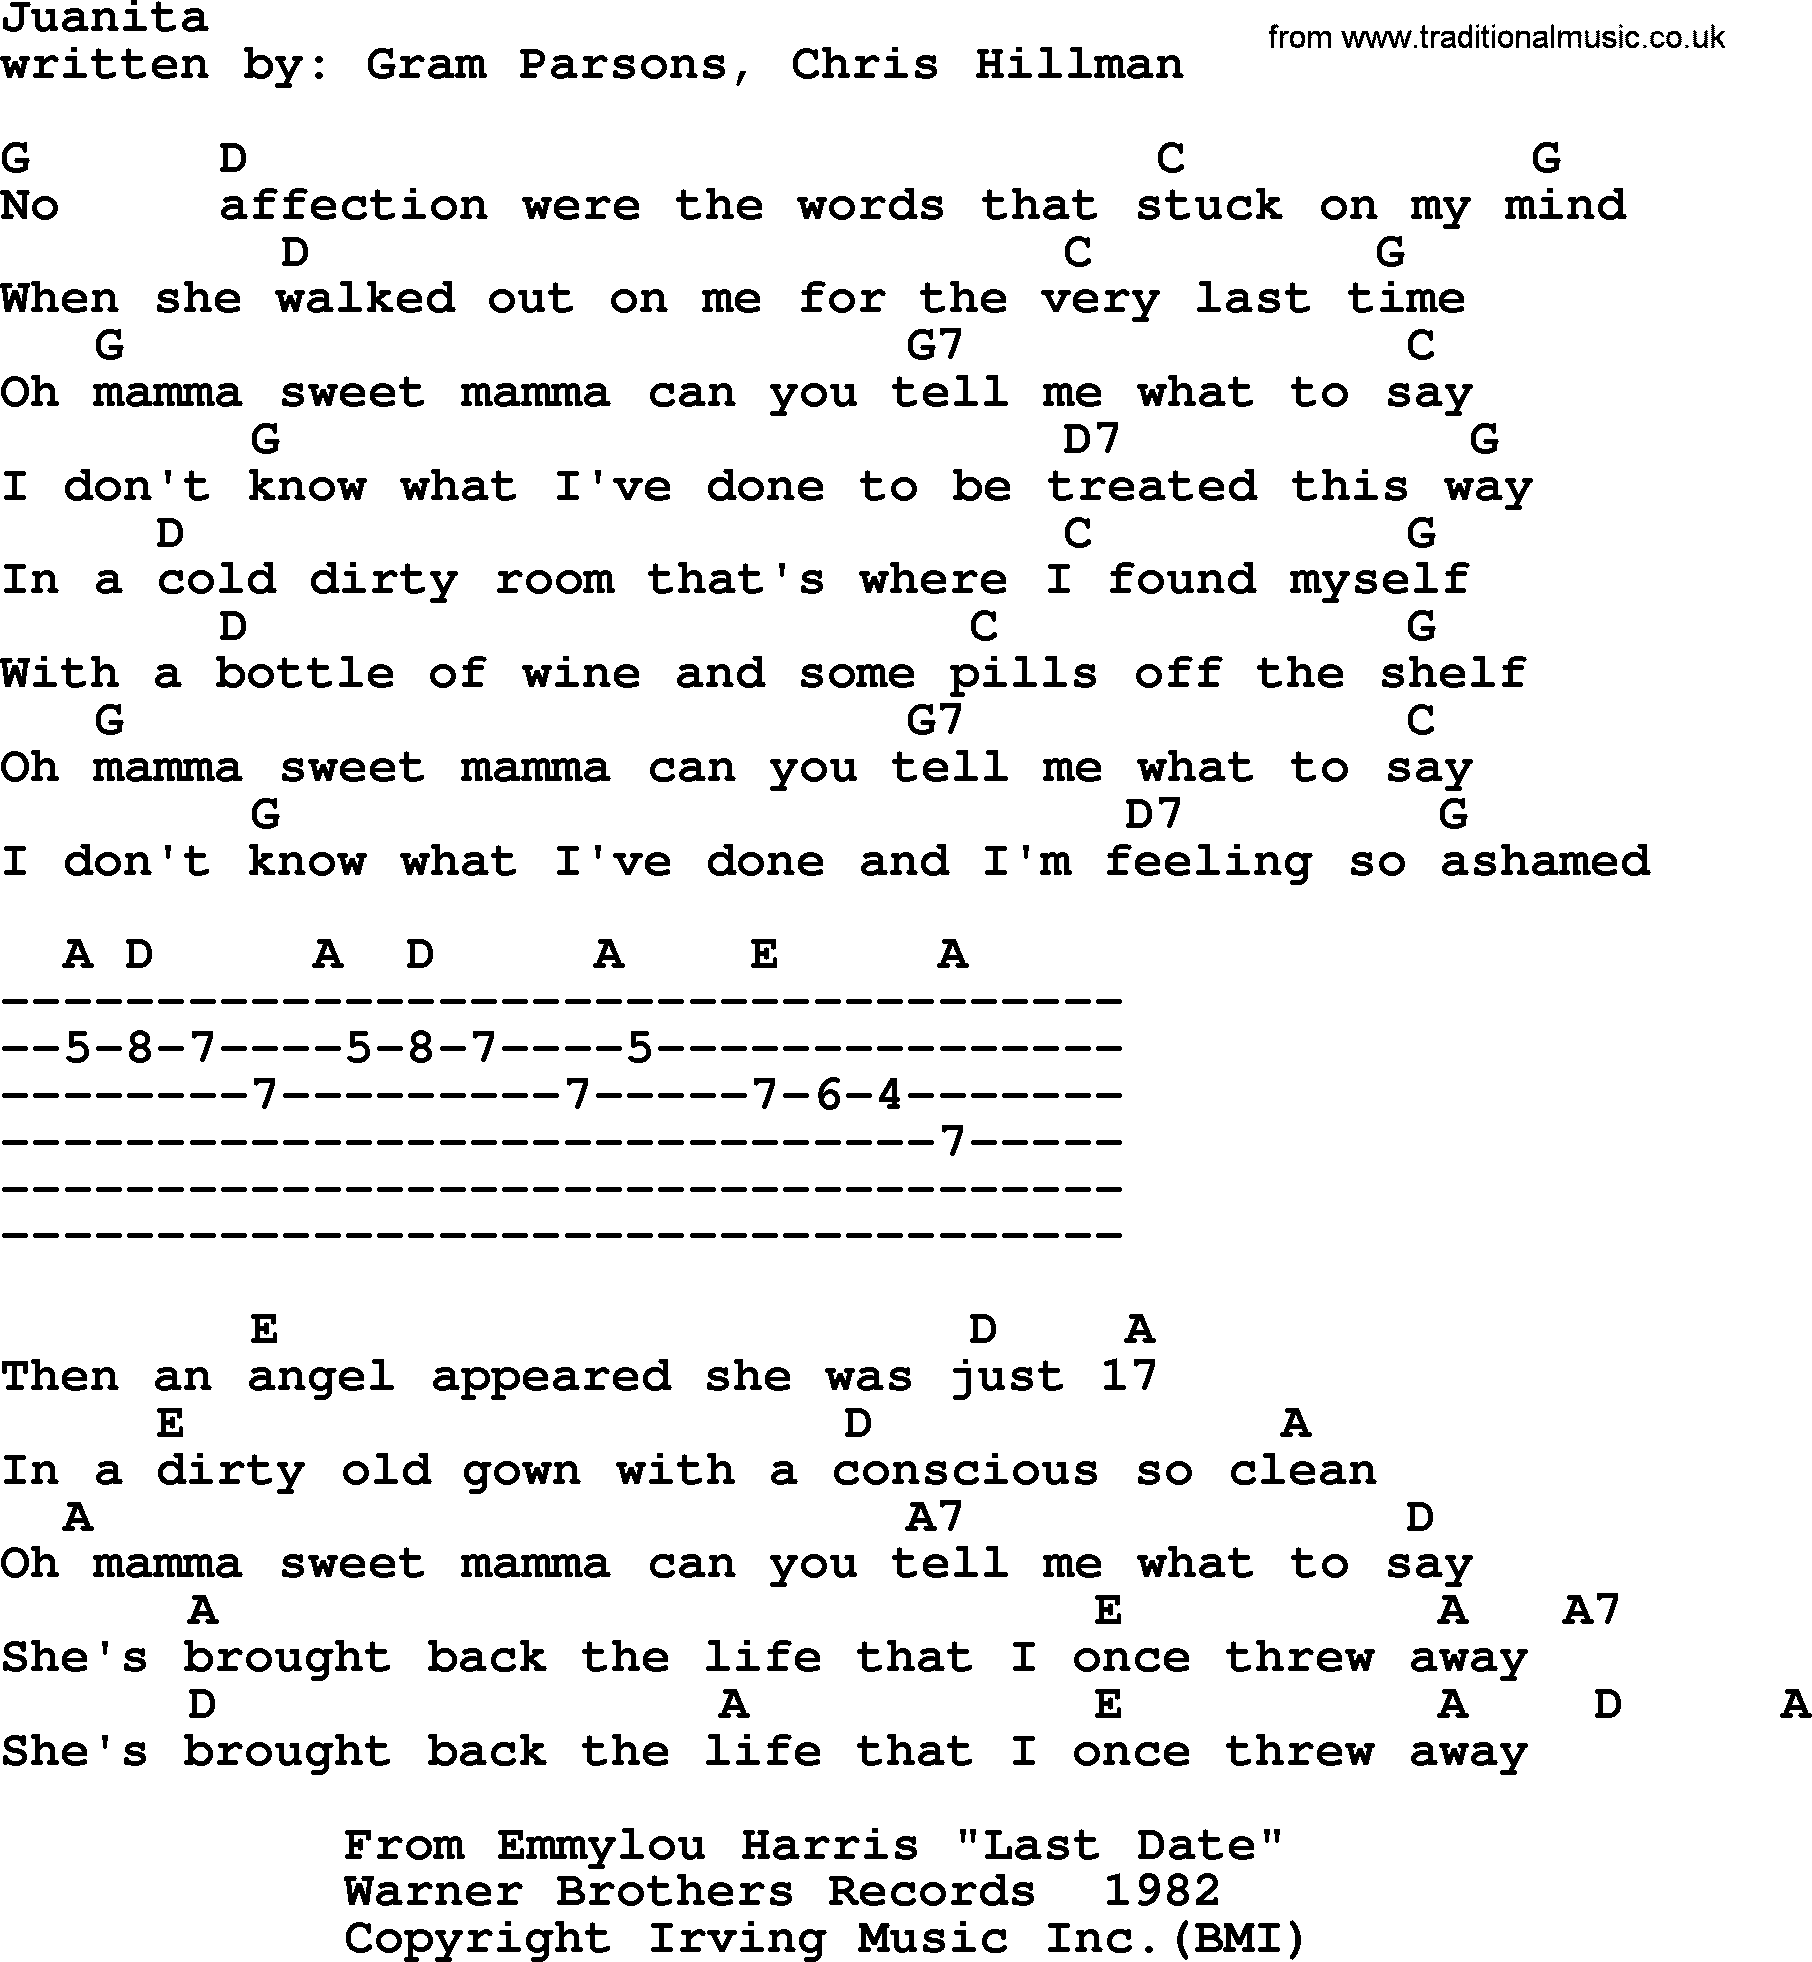 Emmylou Harris song: Juanita lyrics and chords